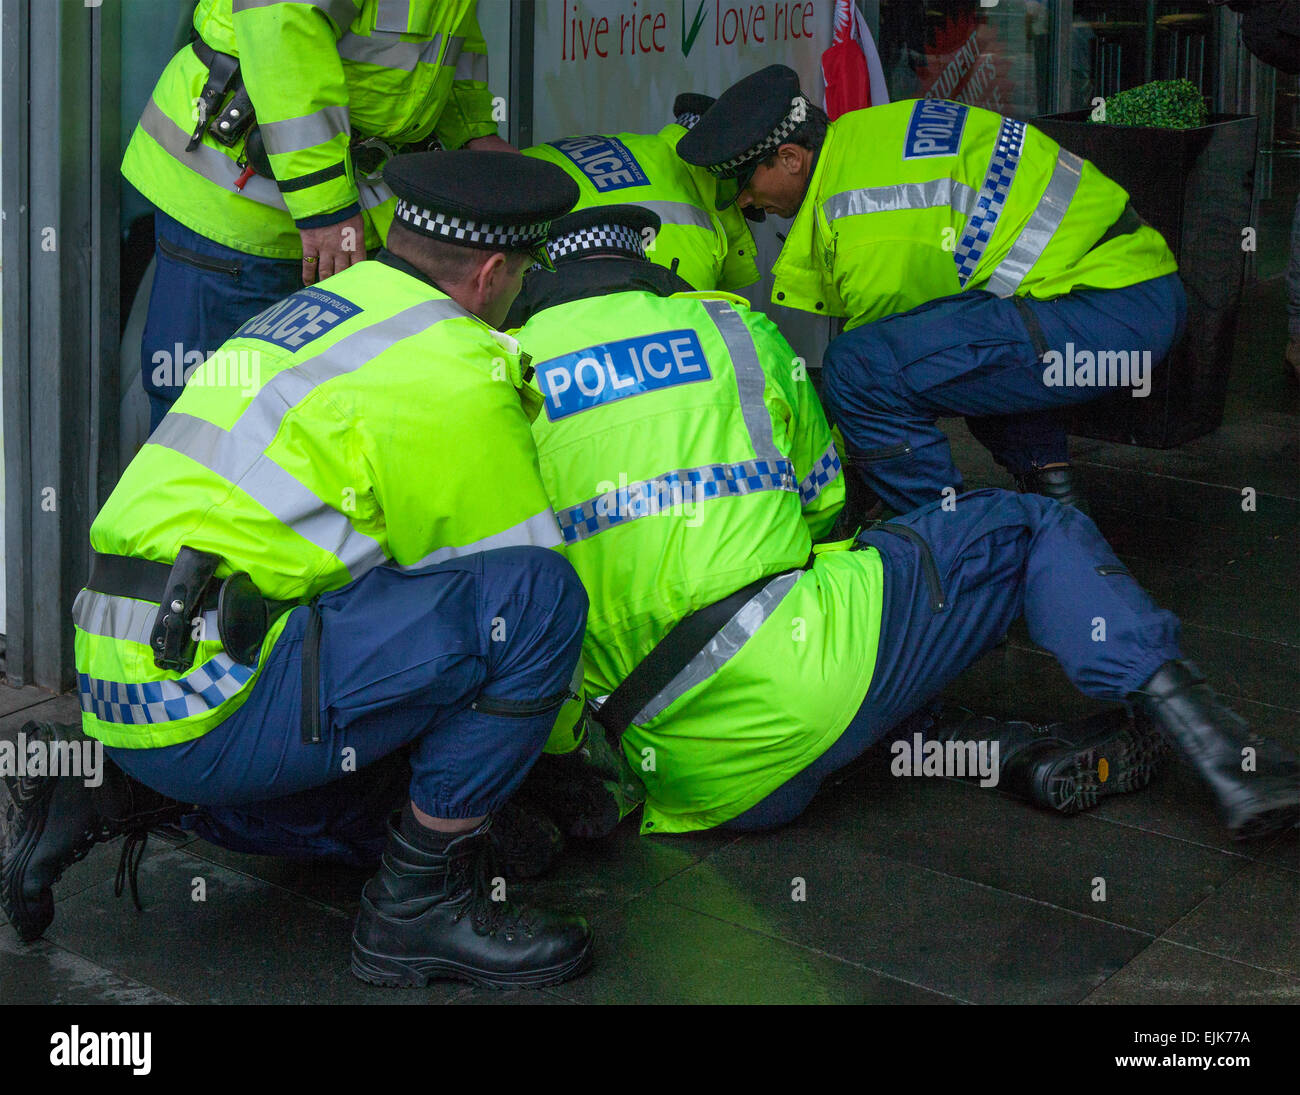 Manchester, Royaume-Uni 28th mars 2015. Les manifestants se sont retenus après une confrontation avec cinq officiers de police en uniforme, à l'occasion de la démonstration du Front national et de la fierté blanche à Piccadilly. Des arrestations ont eu lieu jusqu'à l'extrême-droite du groupe « White Pride » réuni à Manchester pour organiser une manifestation lorsqu'environ 50 membres du groupe ont brandi des drapeaux et défilé dans les jardins de Piccadilly. Les militants antifascistes ont organisé une contre-manifestation et la police a séparé les deux parties. La police du Grand Manchester a déclaré que deux arrestations avaient été effectuées, l'une pour violation de la paix. Le second a également été détenu pour une infraction d'ordre public. Banque D'Images